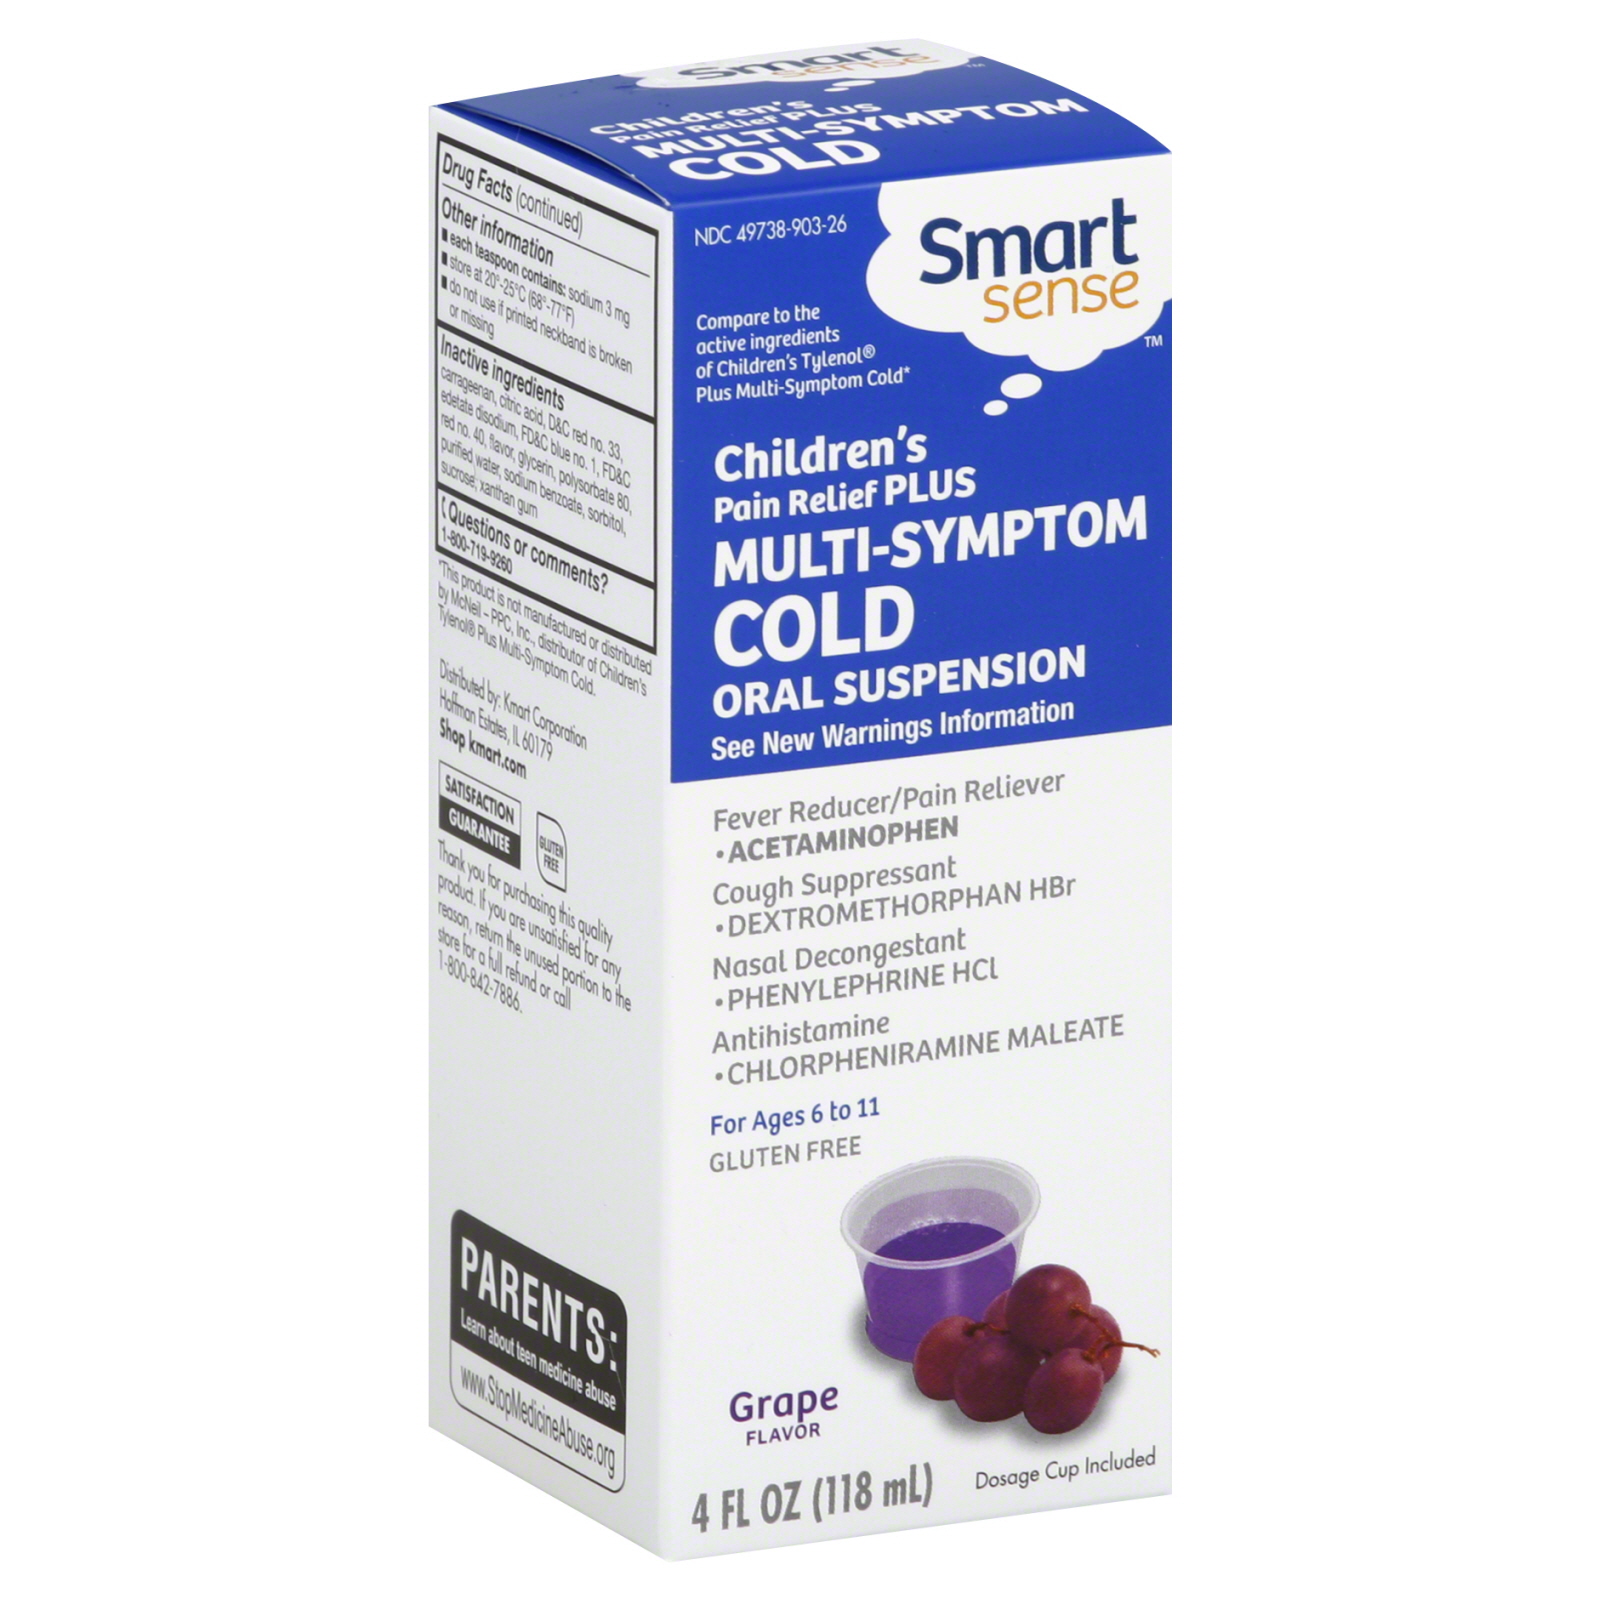 Smart Sense Multi-Symptom Cold, Pain Relief Plus, Children's, Oral Suspension, Grape Flavor, 4 oz